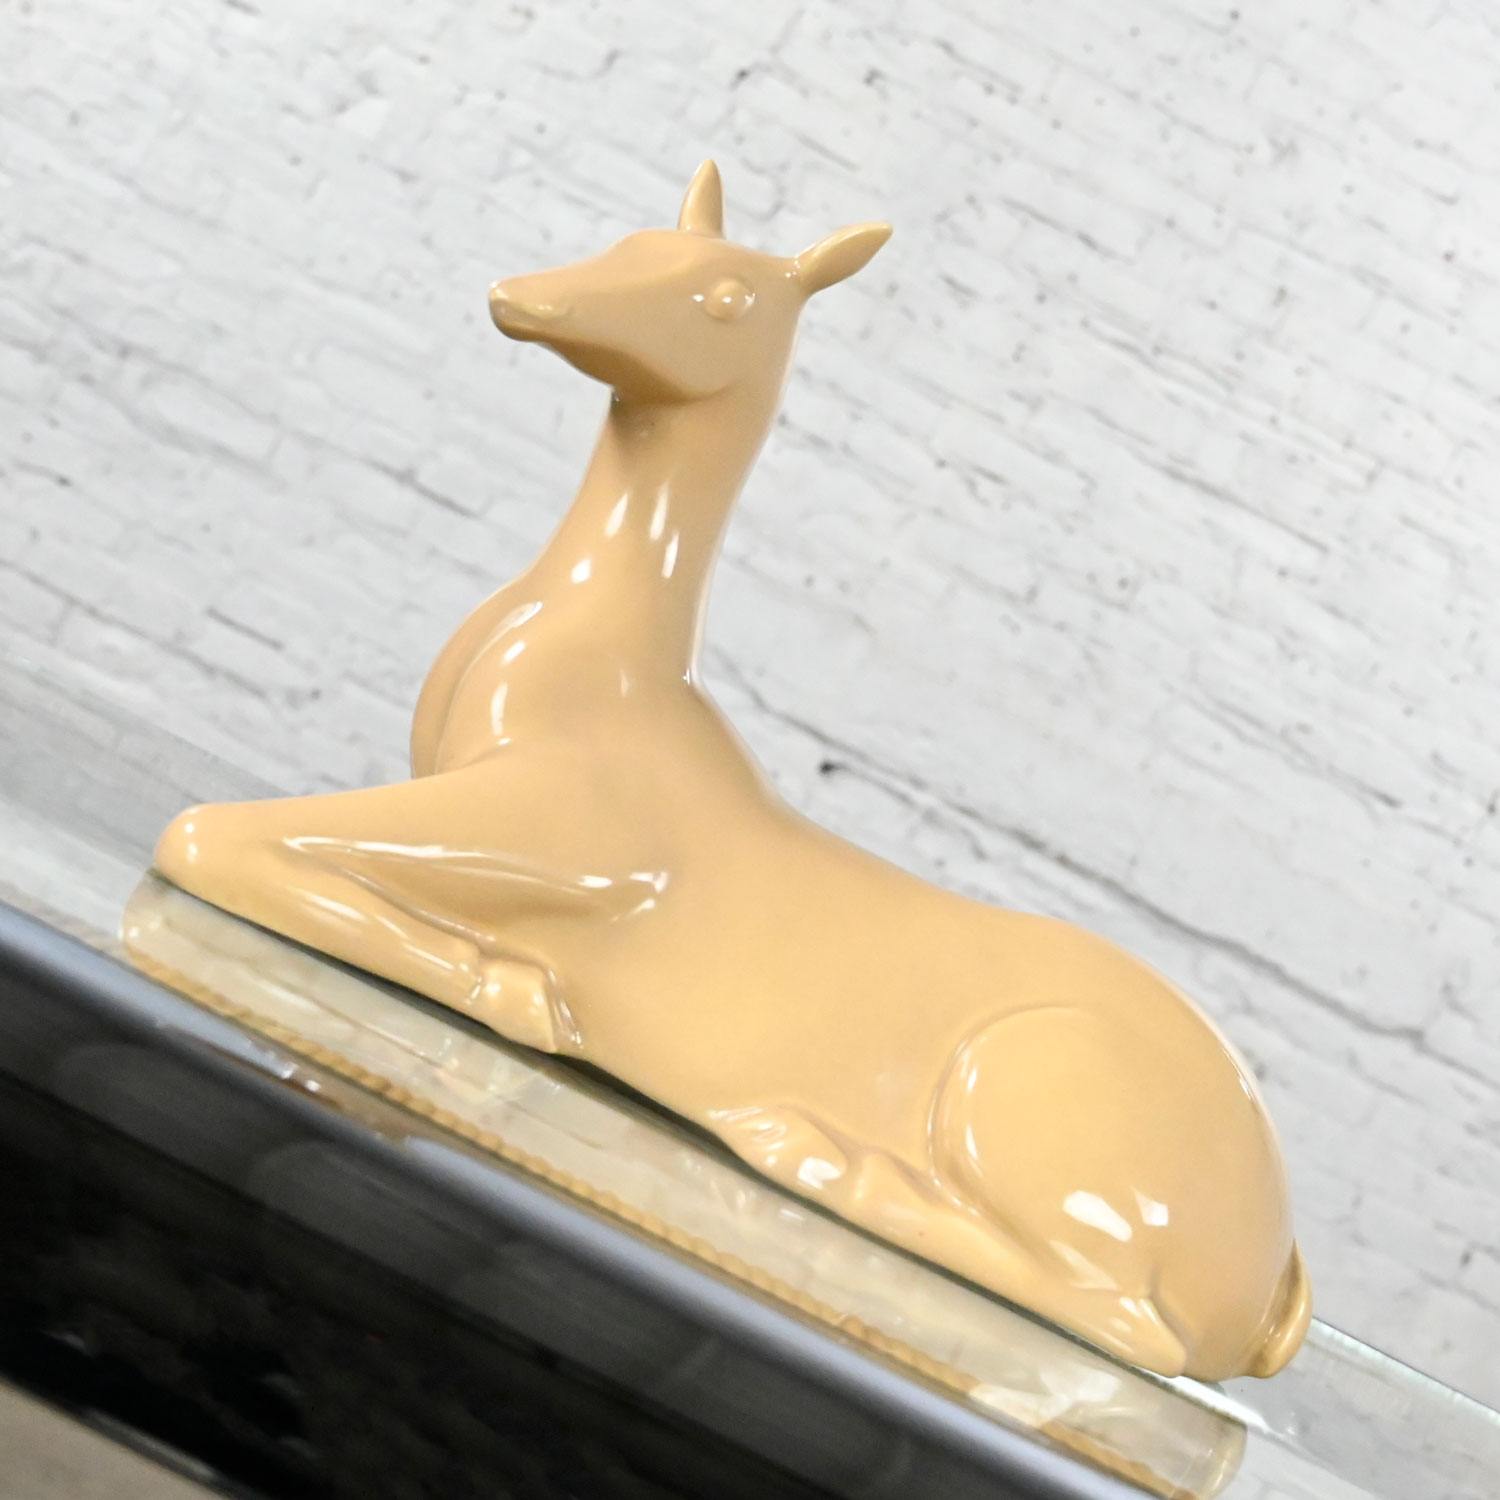 Vintage MCM to Modern Art Deco Revival Caramel Colored Ceramic Deer by Jaru 1975